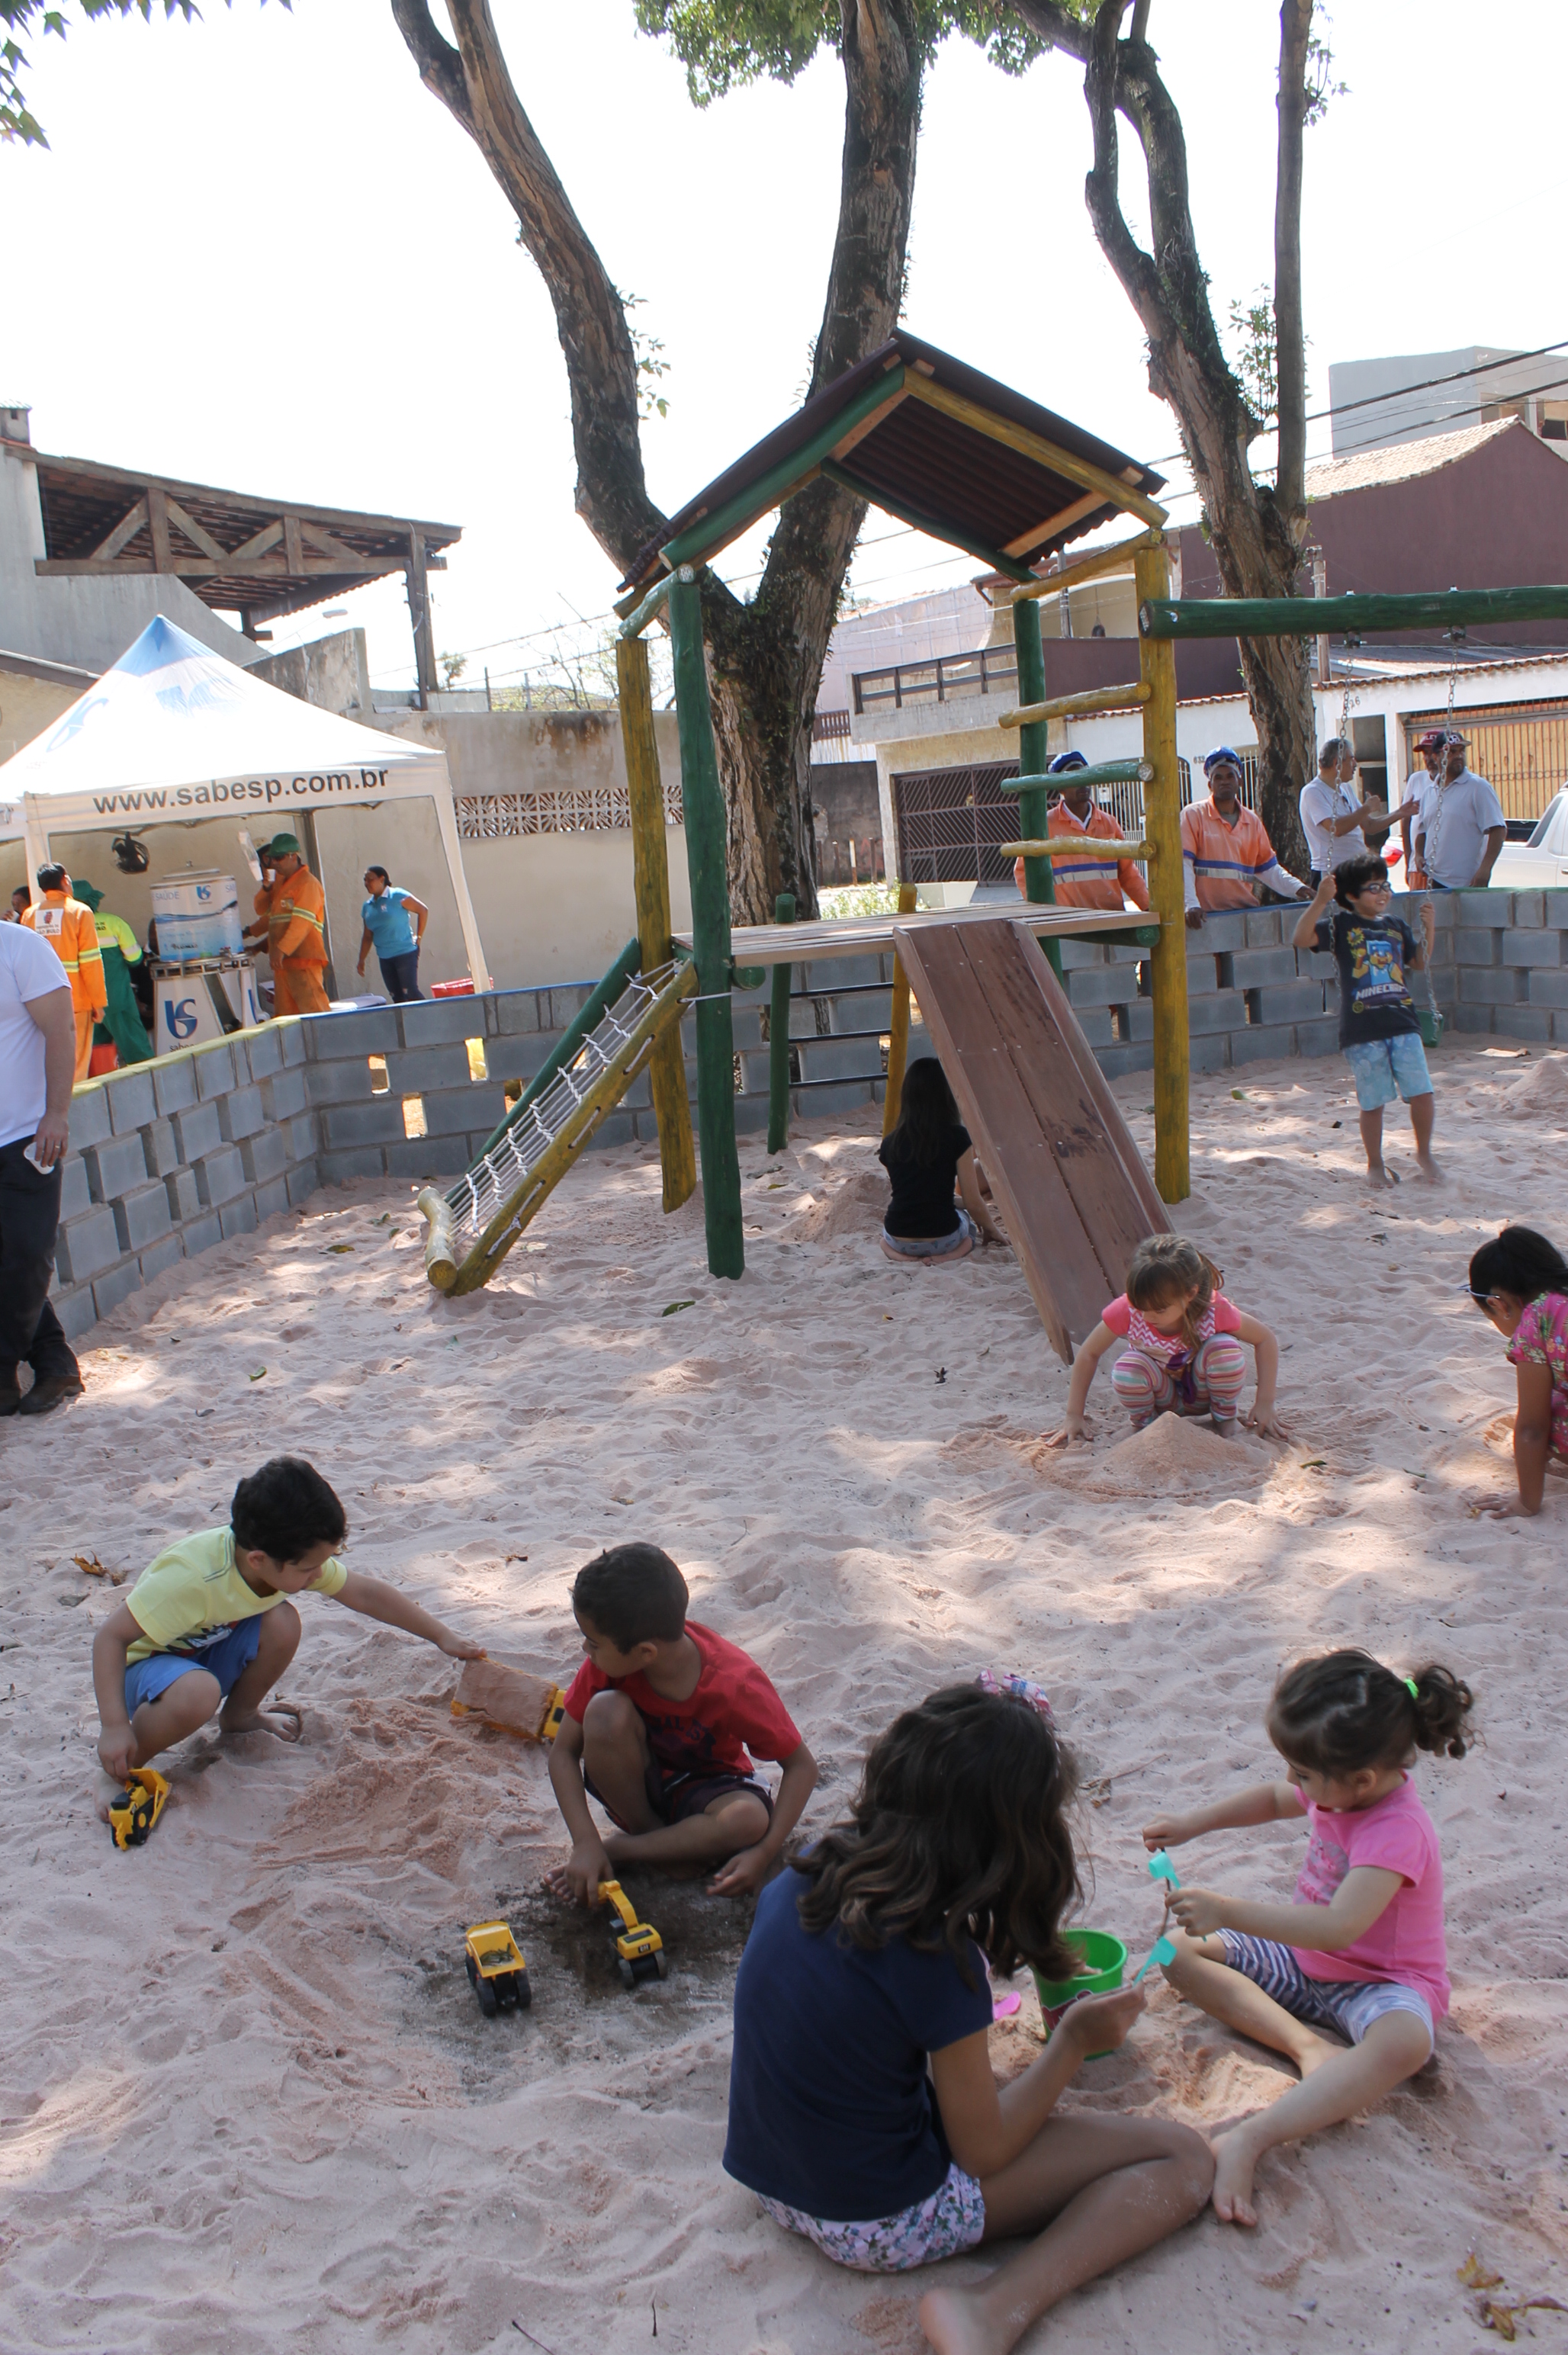 #PraCegoVer - Crianças brincam na caixa de areia da praça. O local é cercado por um muro baixo de blocos. No centro da caixa, há um brinquedo chamado Casa do Tarzan, com escada de cordas e escorregador.